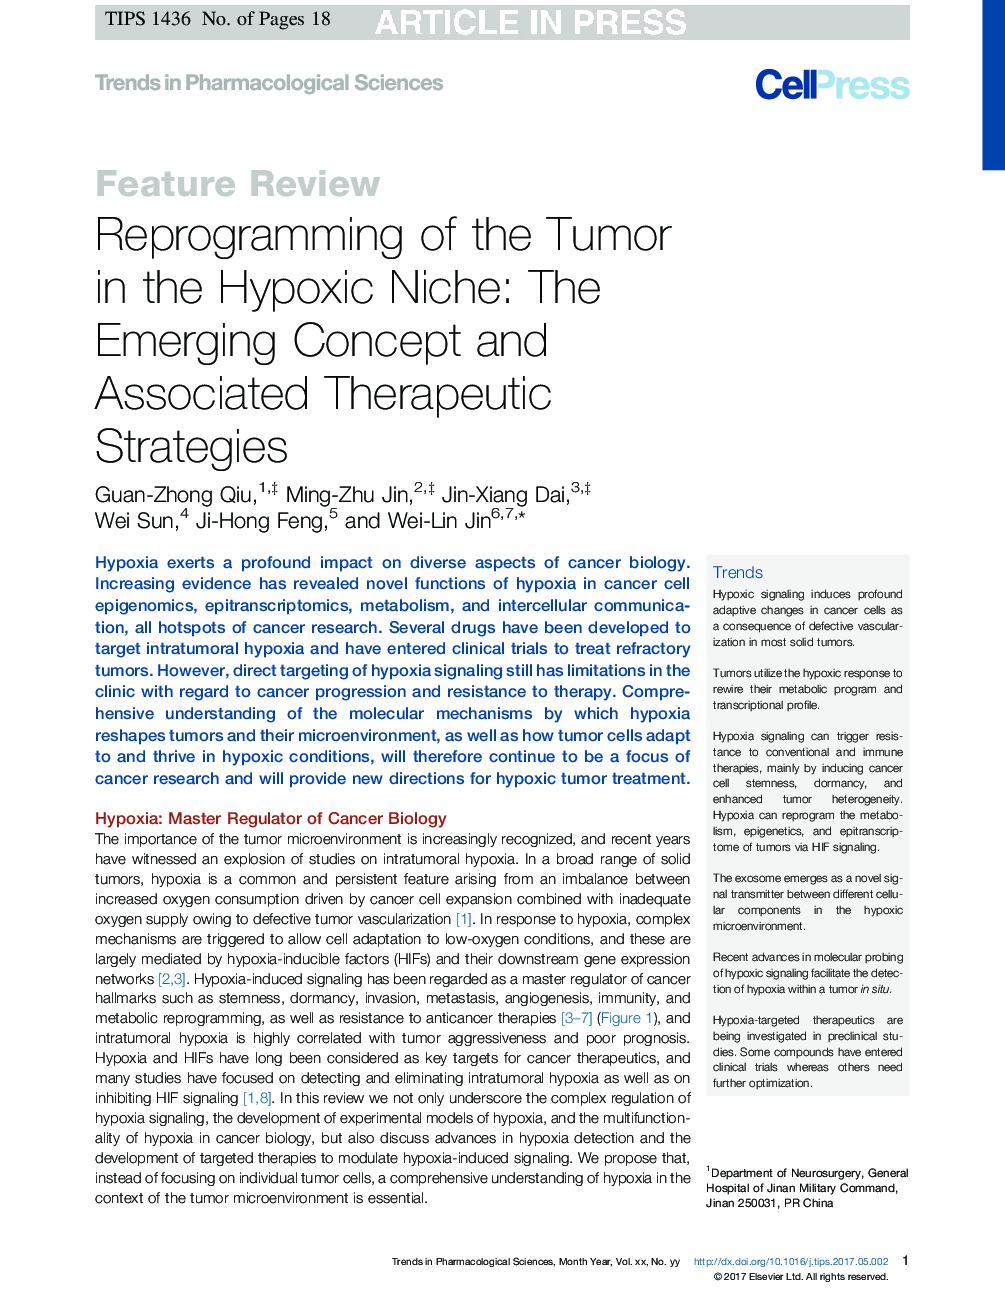 برنامه ریزی مجدد تومور در تنگی هیپوکسی: مفهوم در حال ظهور و استراتژی های مرتبط با درمان 